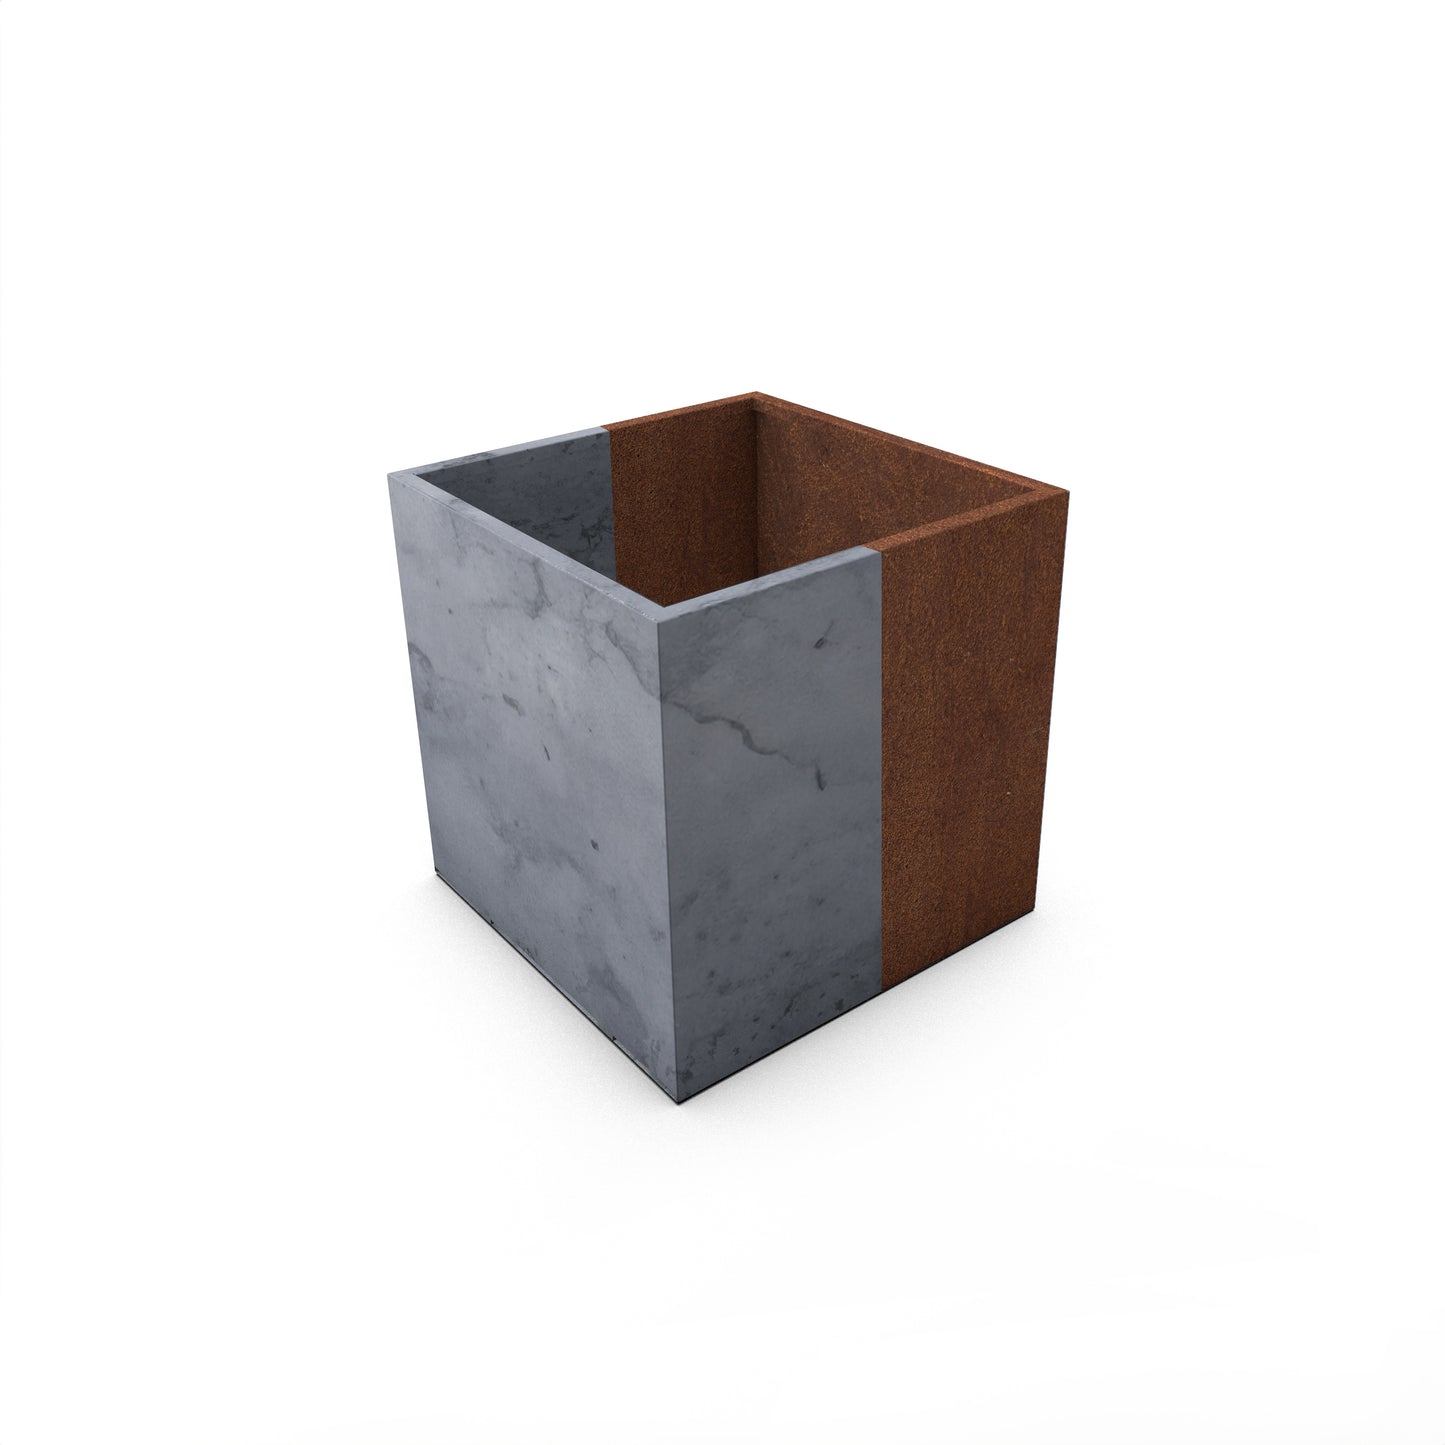 Steel Planter Box (18" L x 18" W x 18" H)